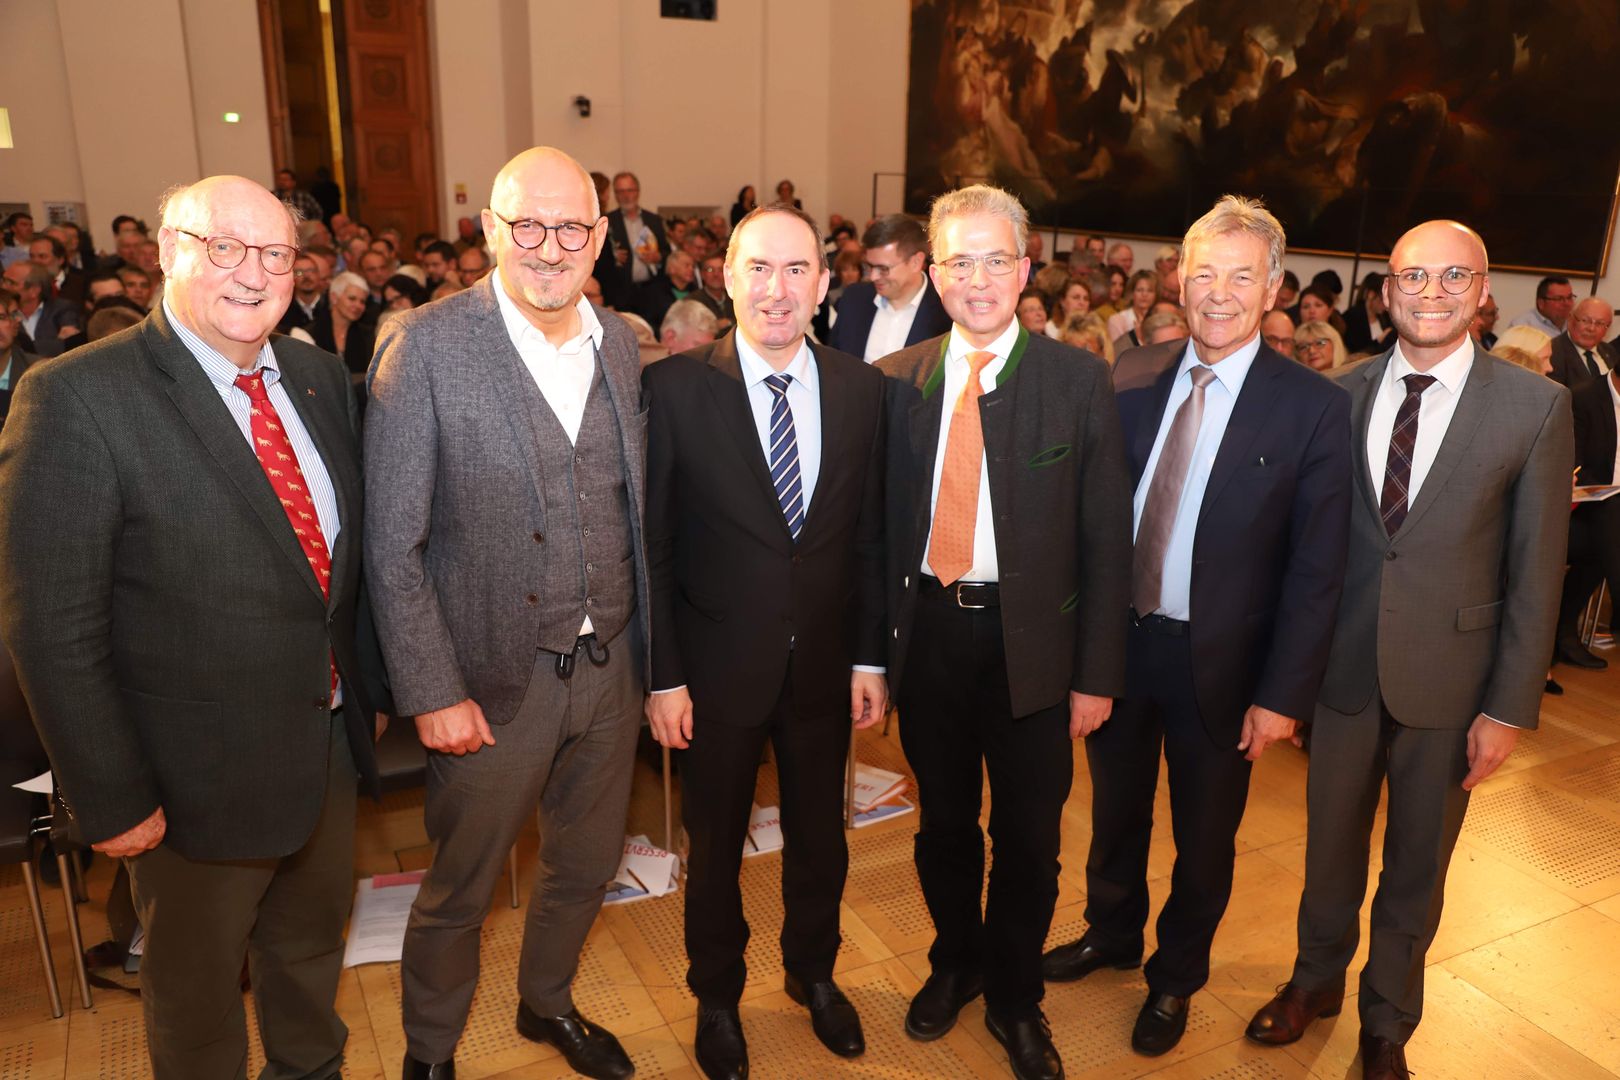 Beste Stimmung im vollbesetzten Senatssaal. Unser Bild zeigt von links: Hanskarl Freiherr von Thüngen, Manfred Eibl, Hubert Aiwanger, Florian Streibl, Joachim Hanisch und Fabian Mehring. 